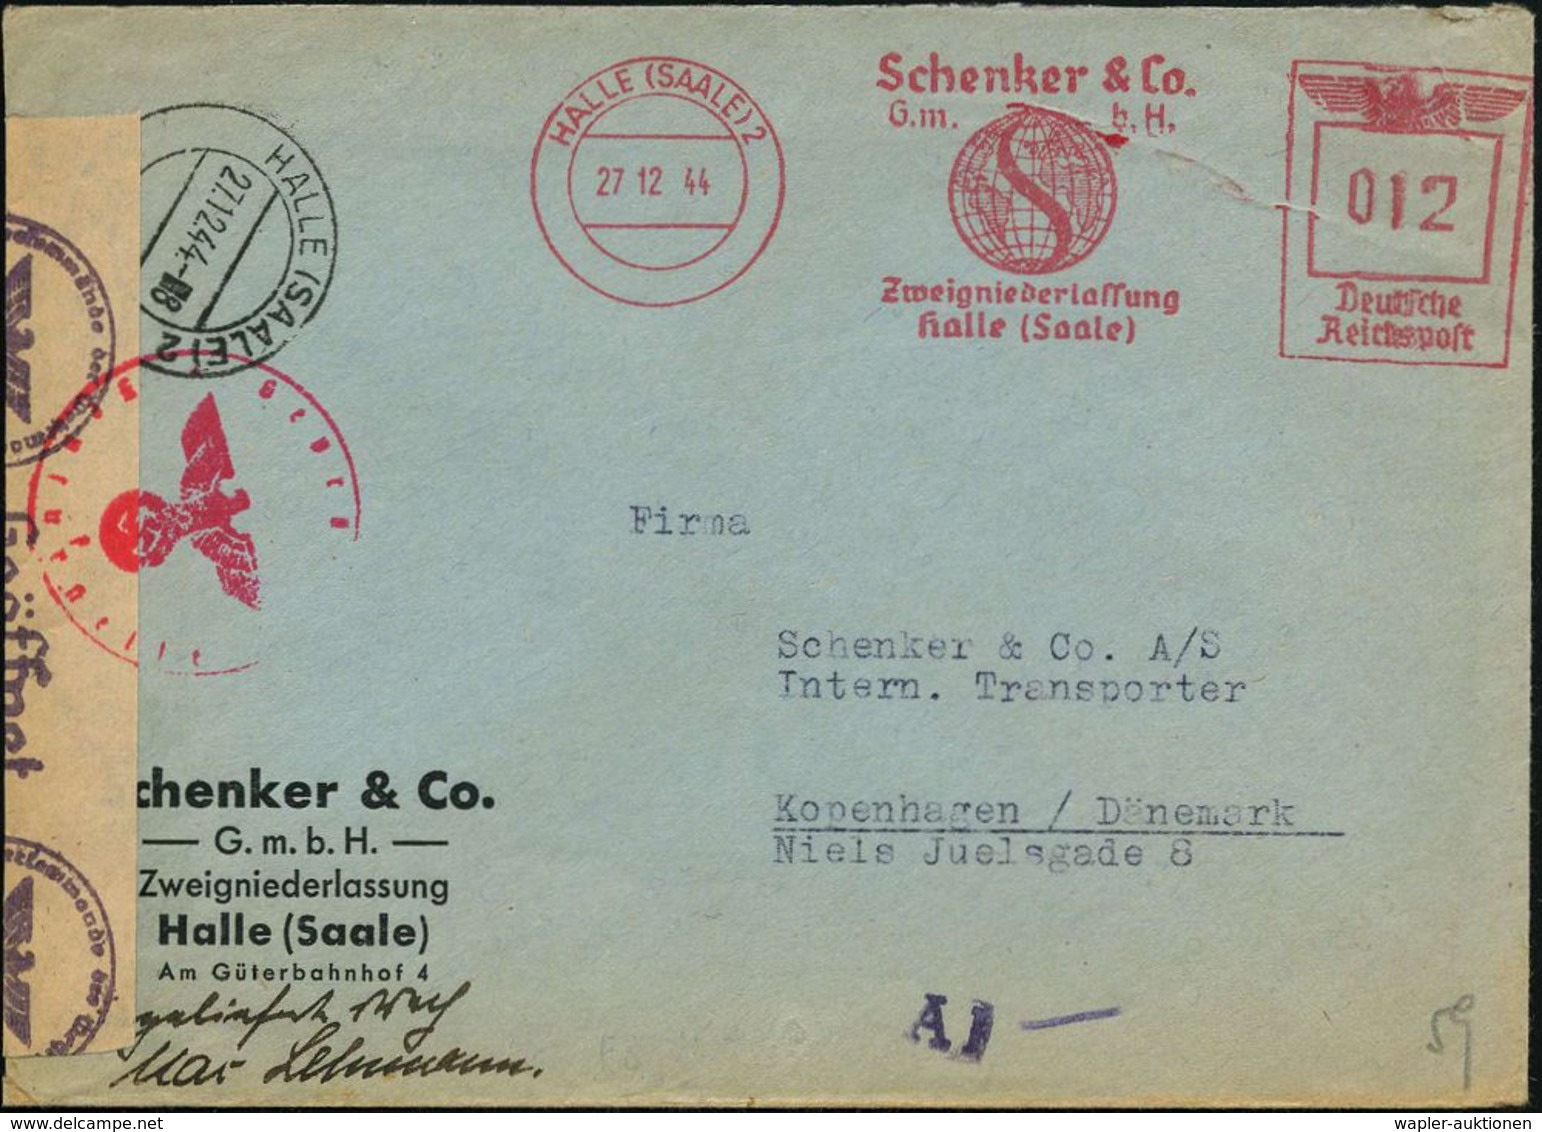 HALLE (SAALE)2/ Schenker & Co. 1944 (27.12.) AFS 012 Pf. = Europa-Tarif + Gestapo-Zensur-1K: Geprüft/f/ Zensurstelle + A - 2. Weltkrieg